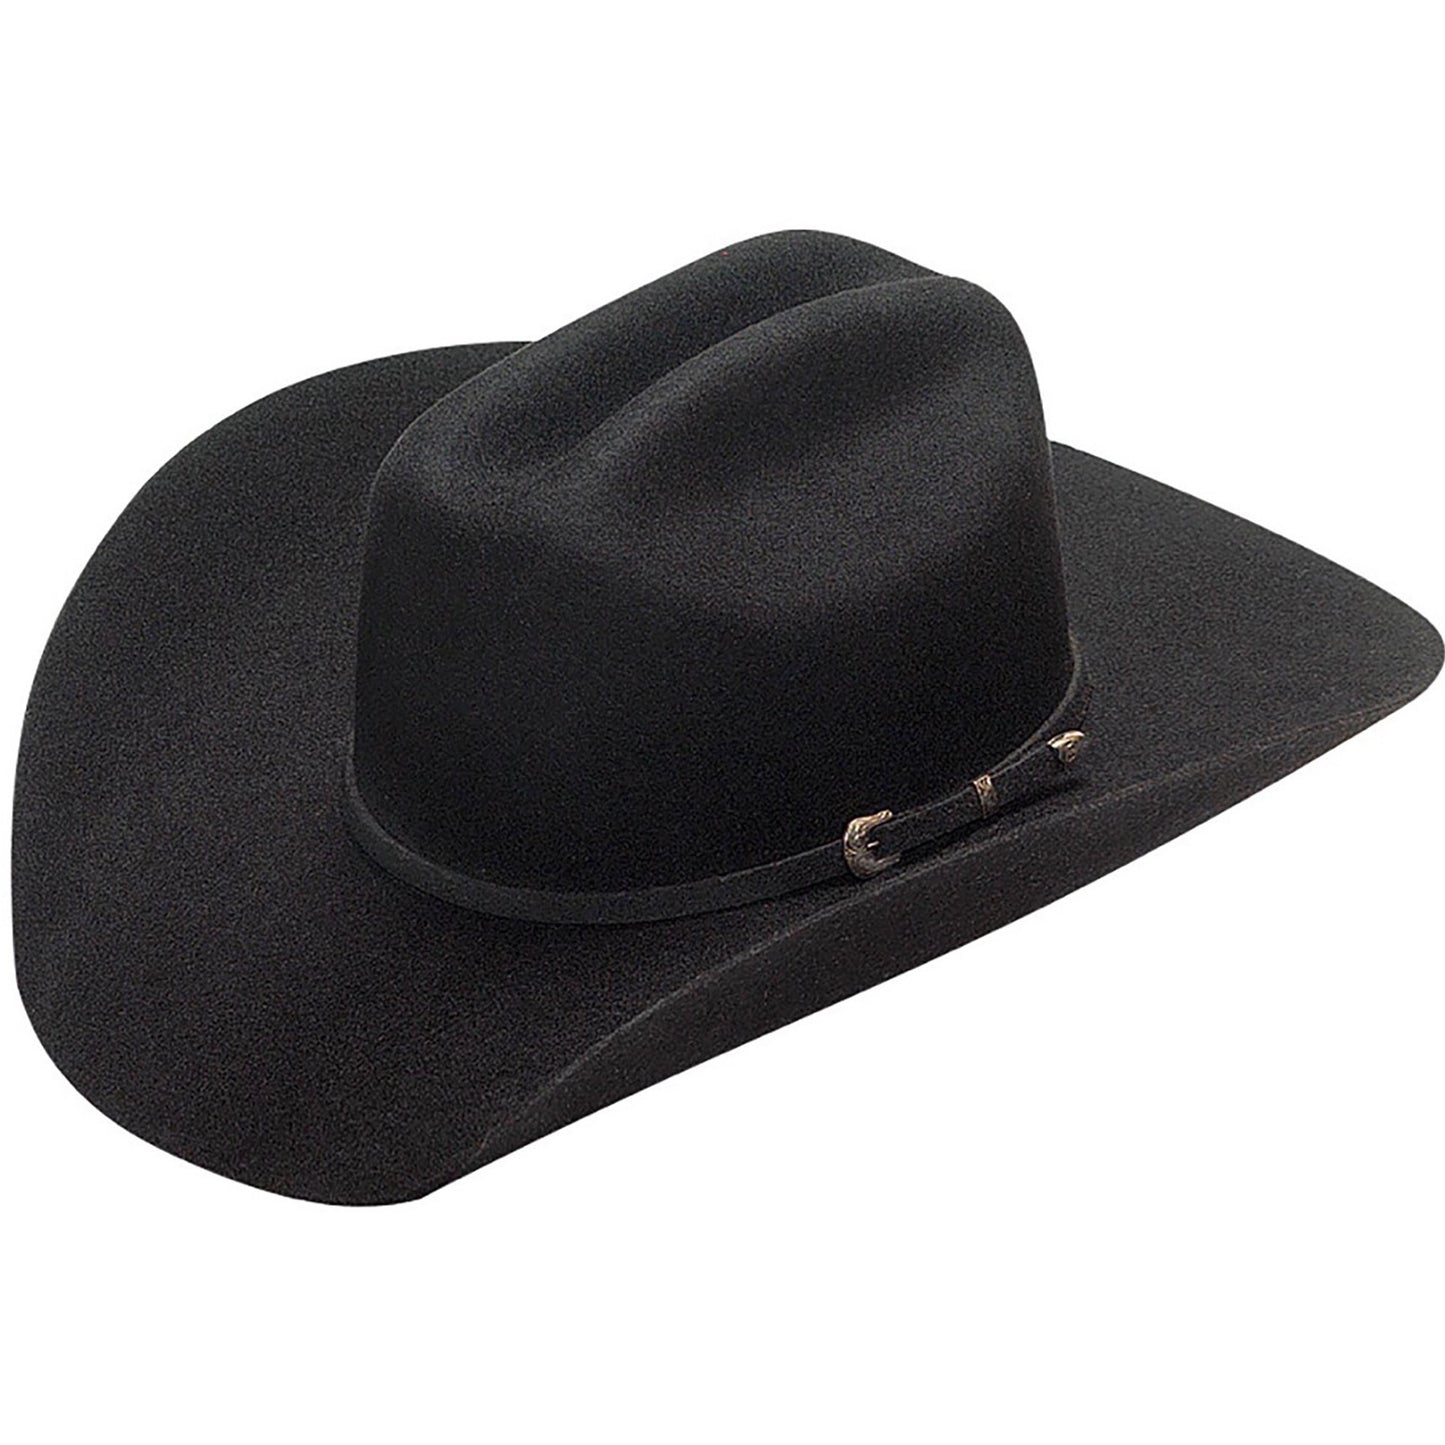 Twister Dallas Black Felt Western Hat